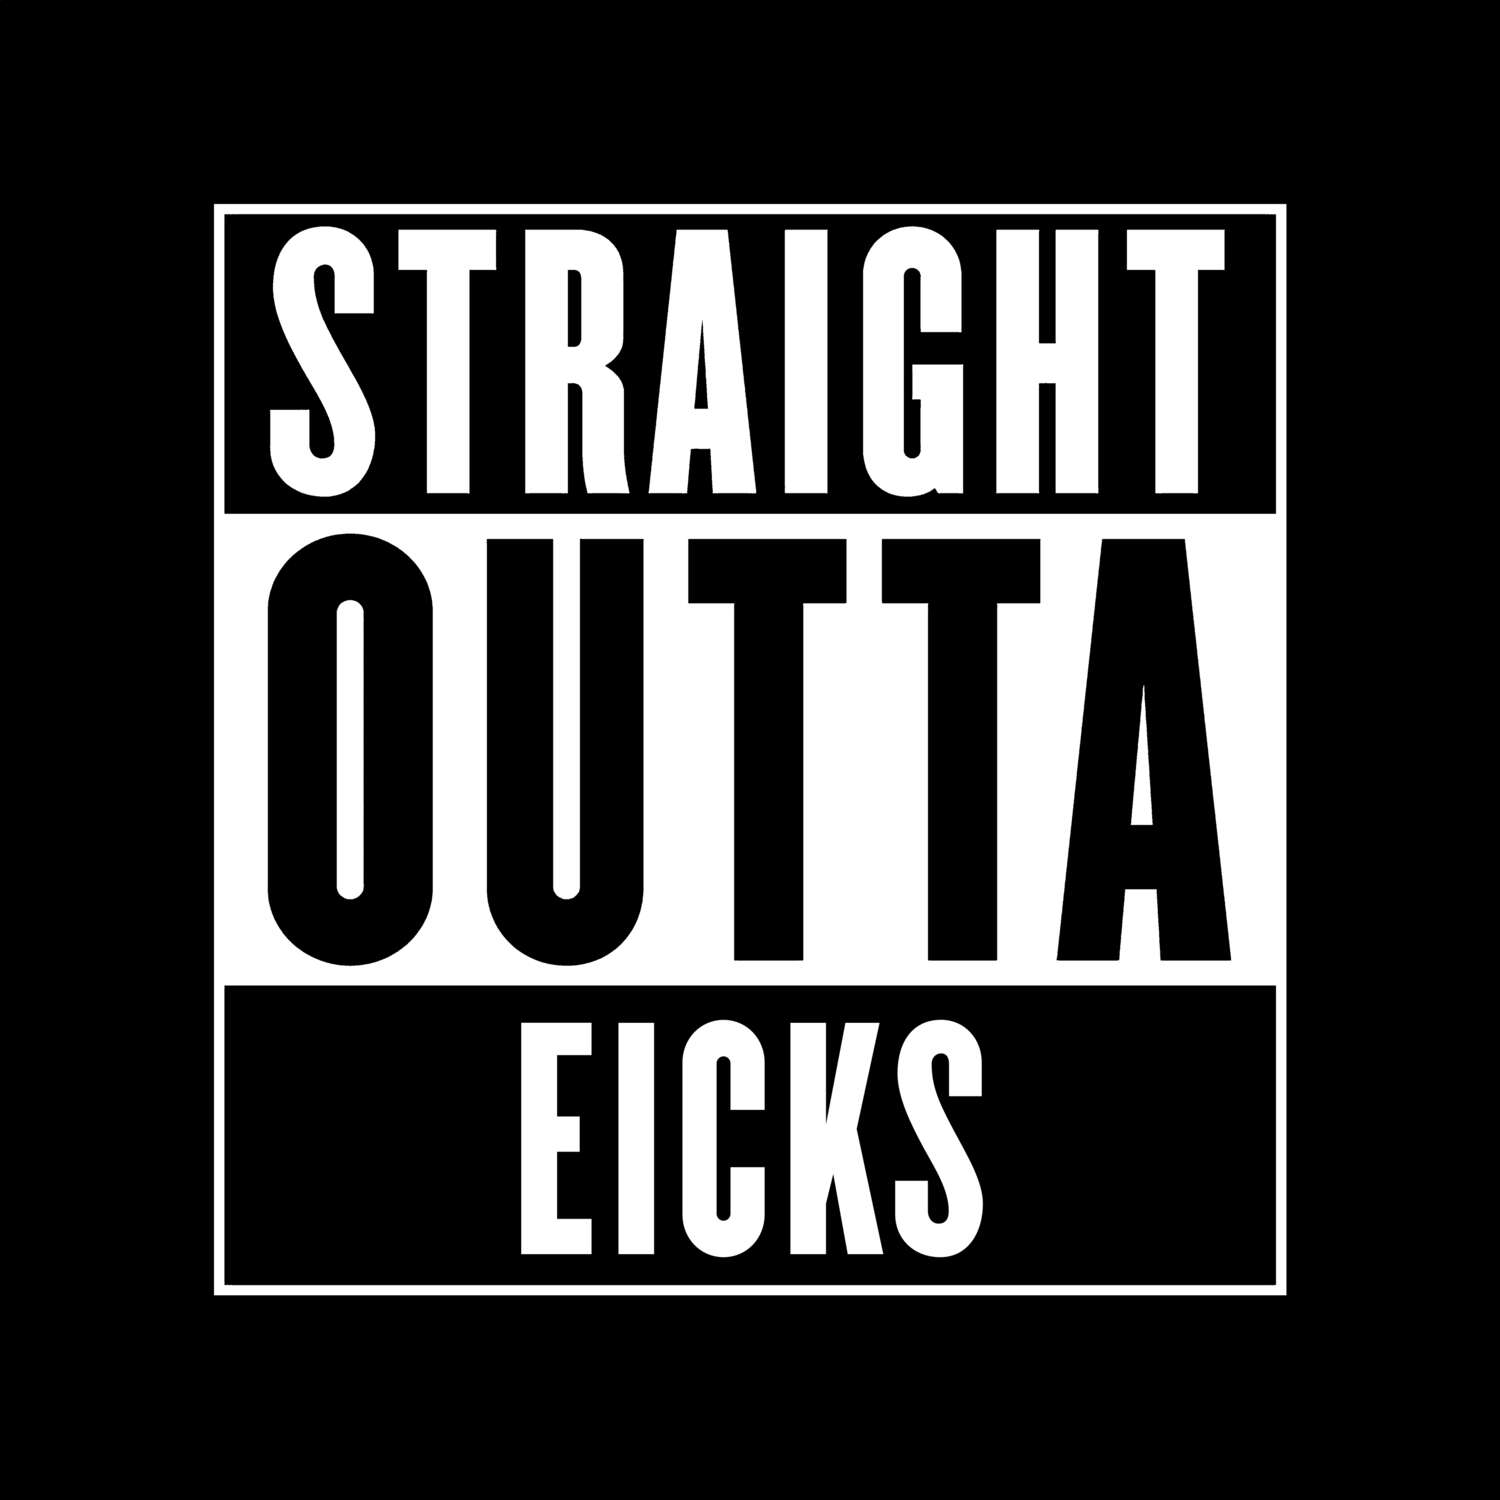 Eicks T-Shirt »Straight Outta«